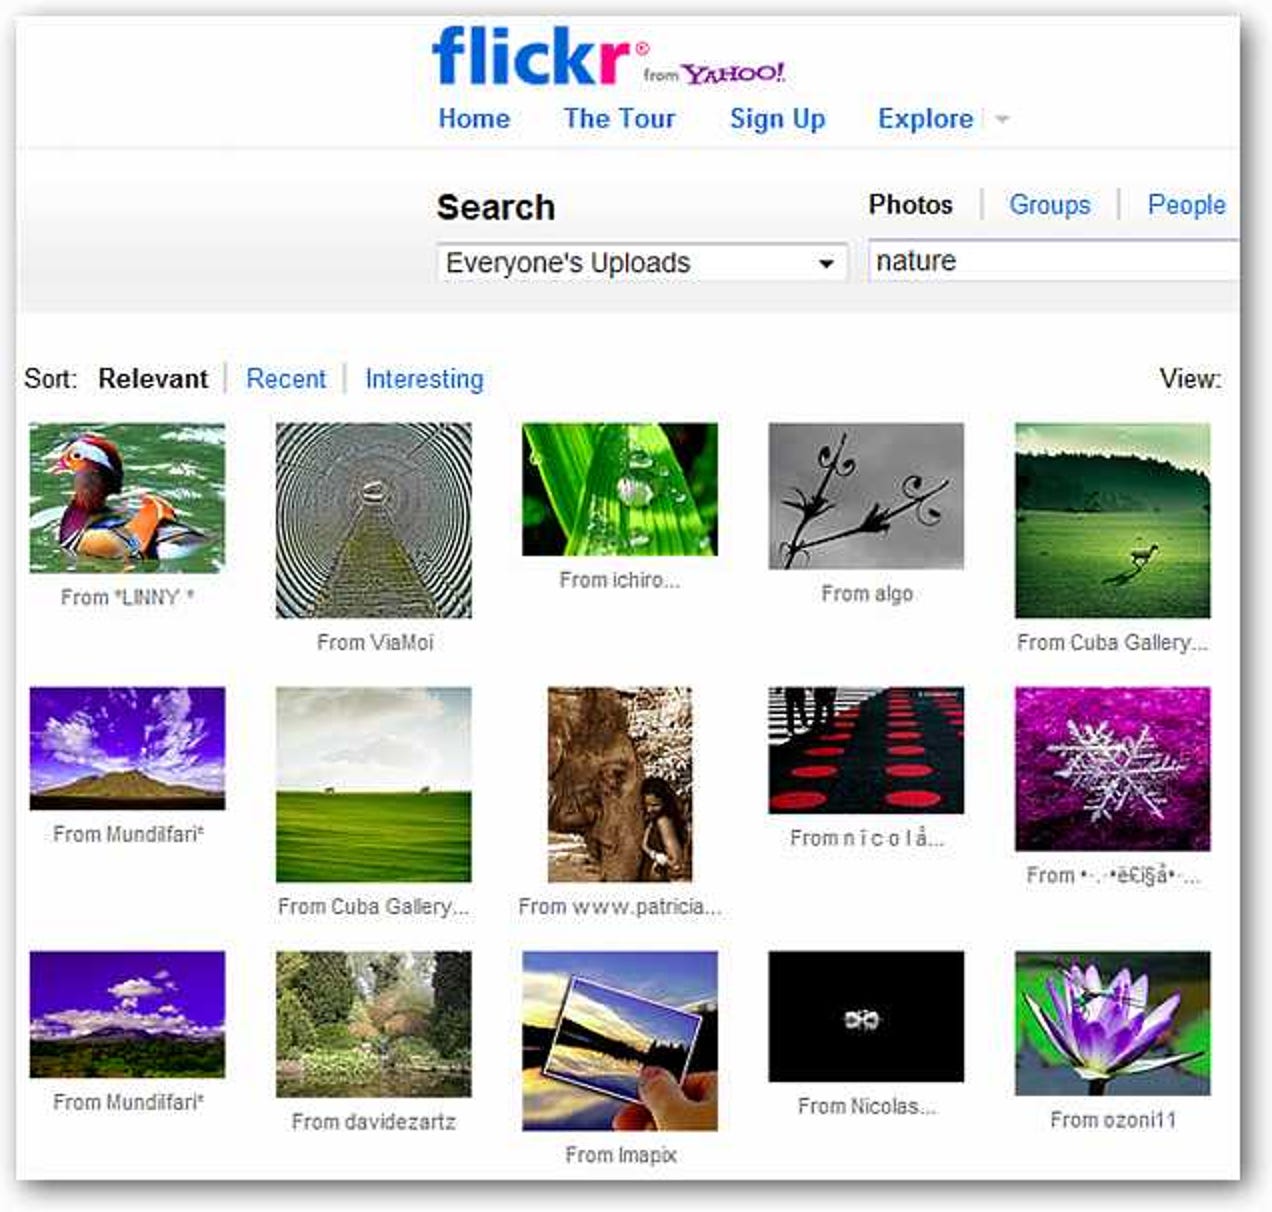 Afficher des images et des vidéos en 3D dans Firefox